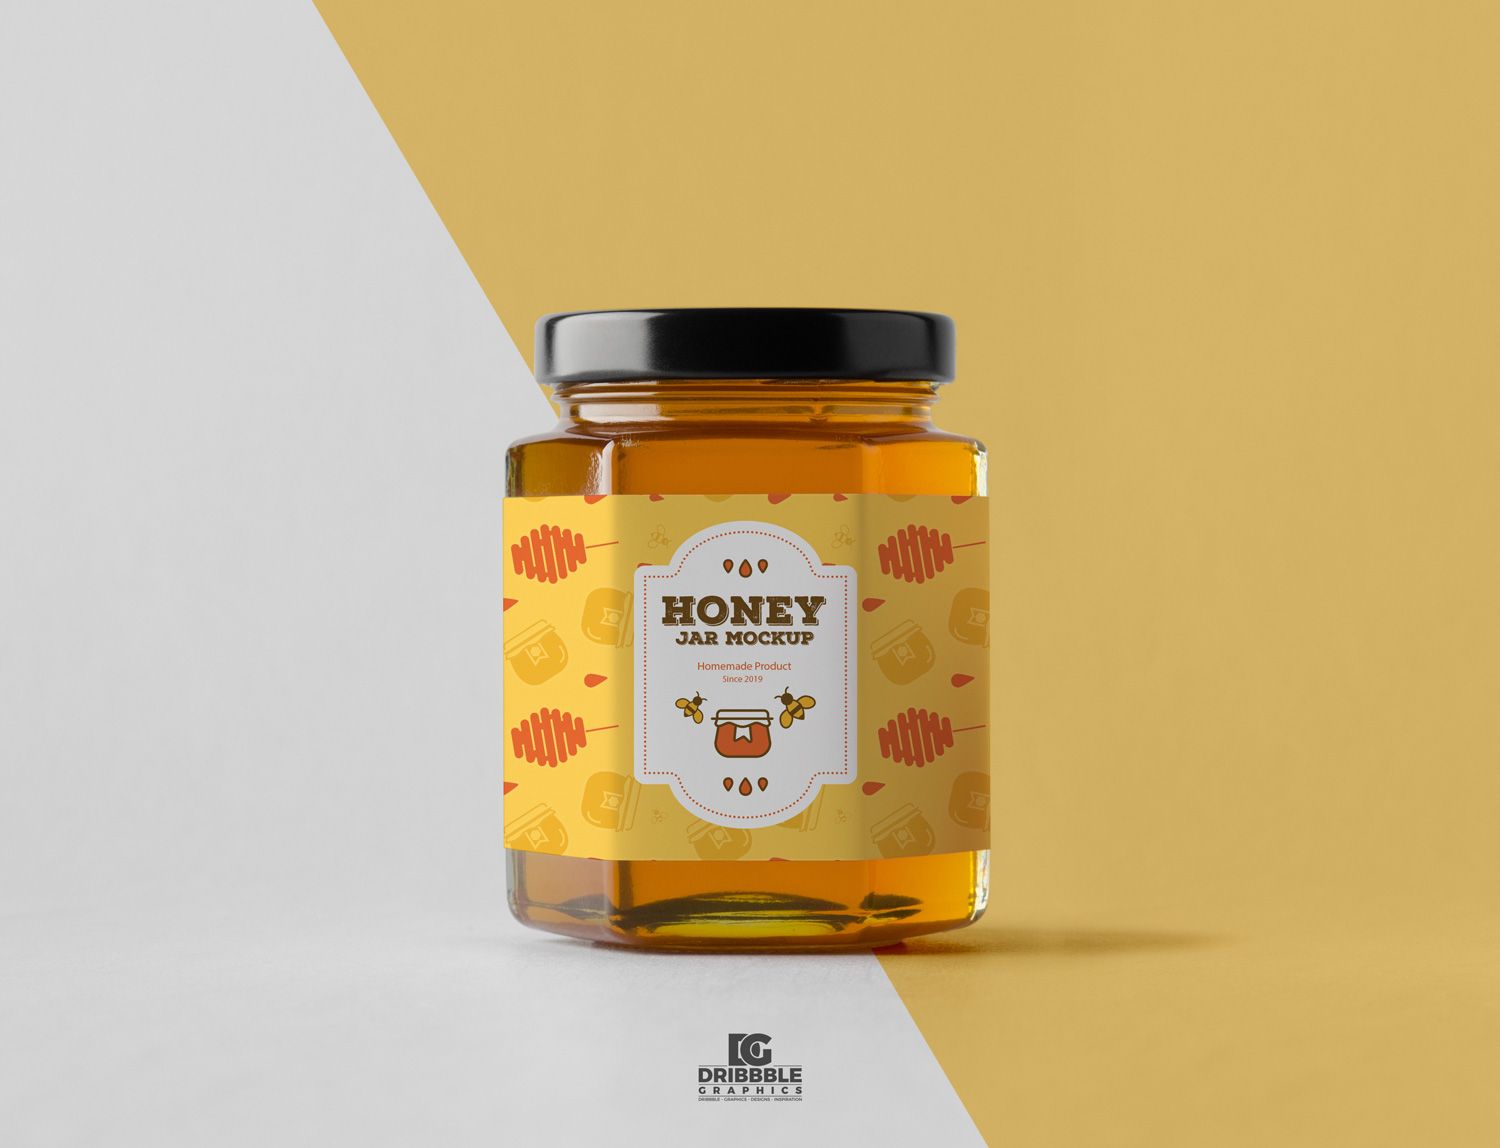 Free-Honey-Jar-Mockup-PSD-2018